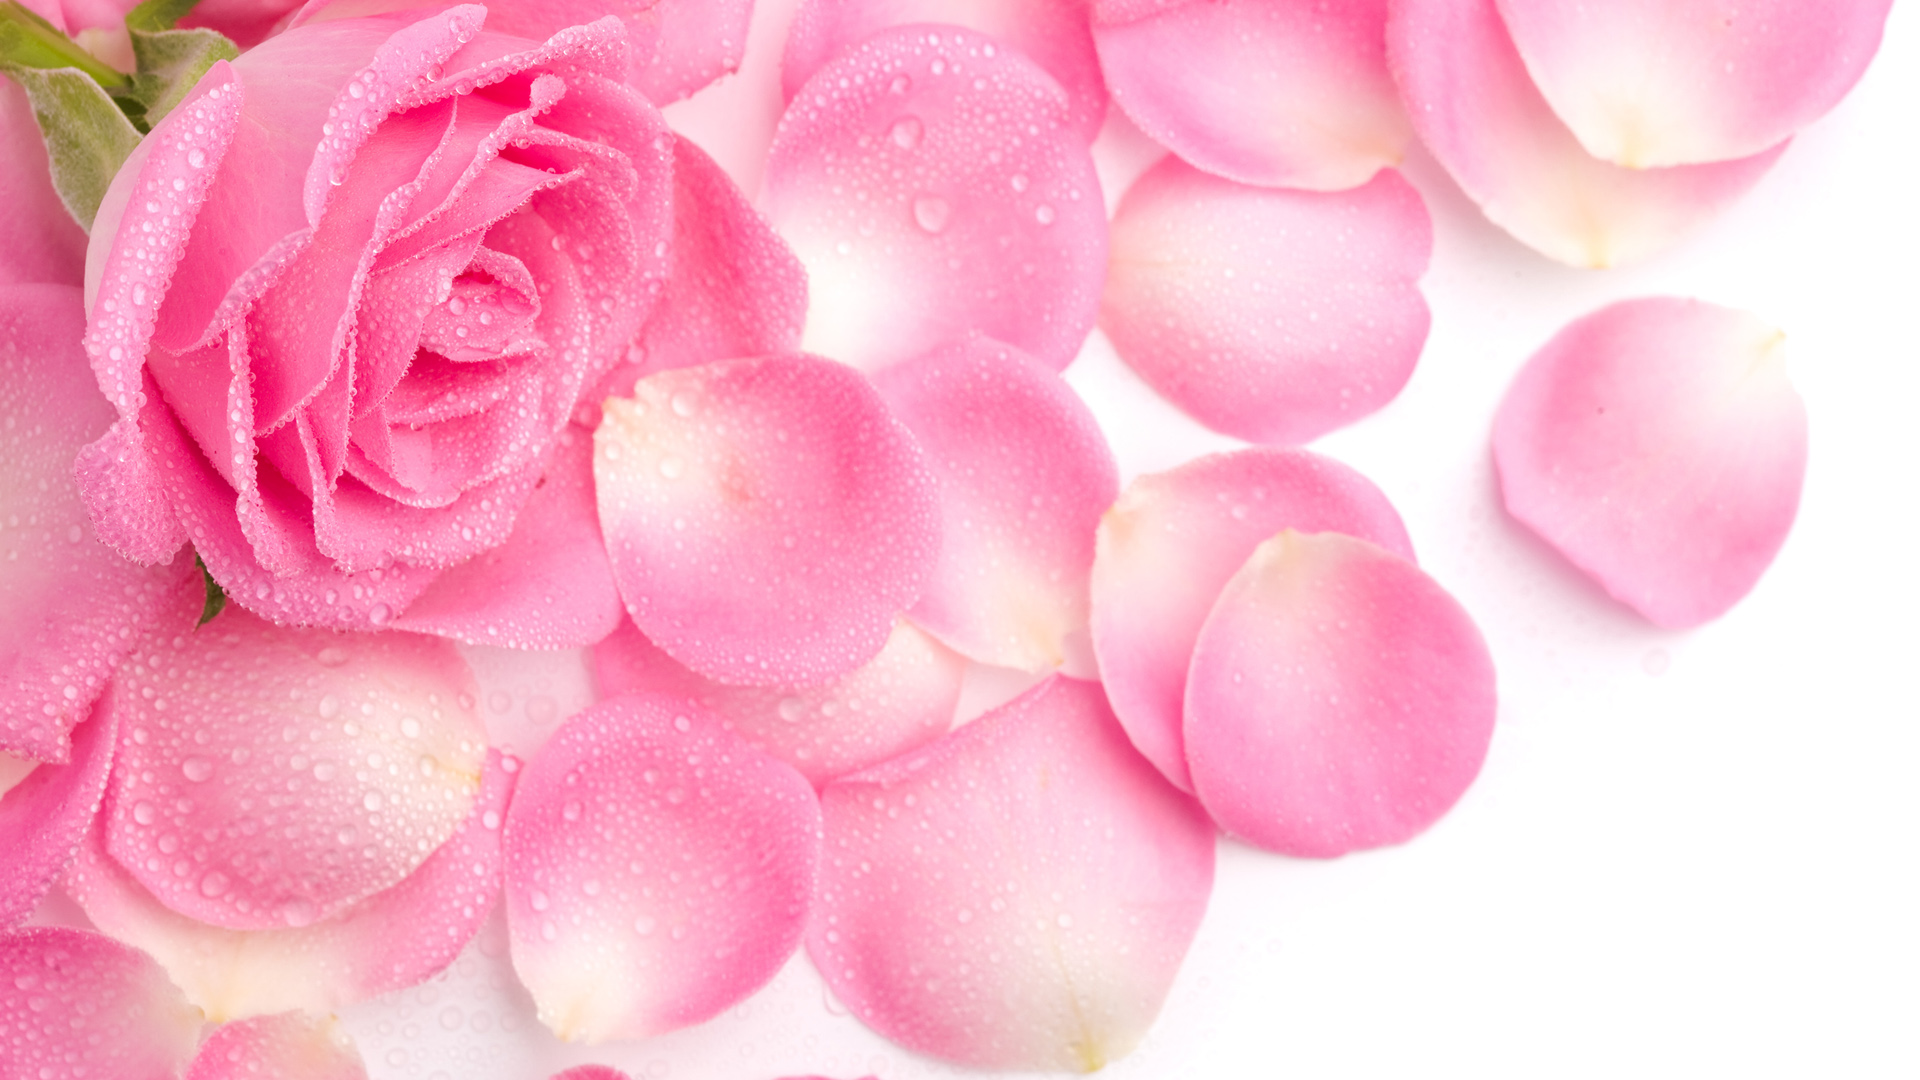 粉色玫瑰花瓣高清桌面壁纸